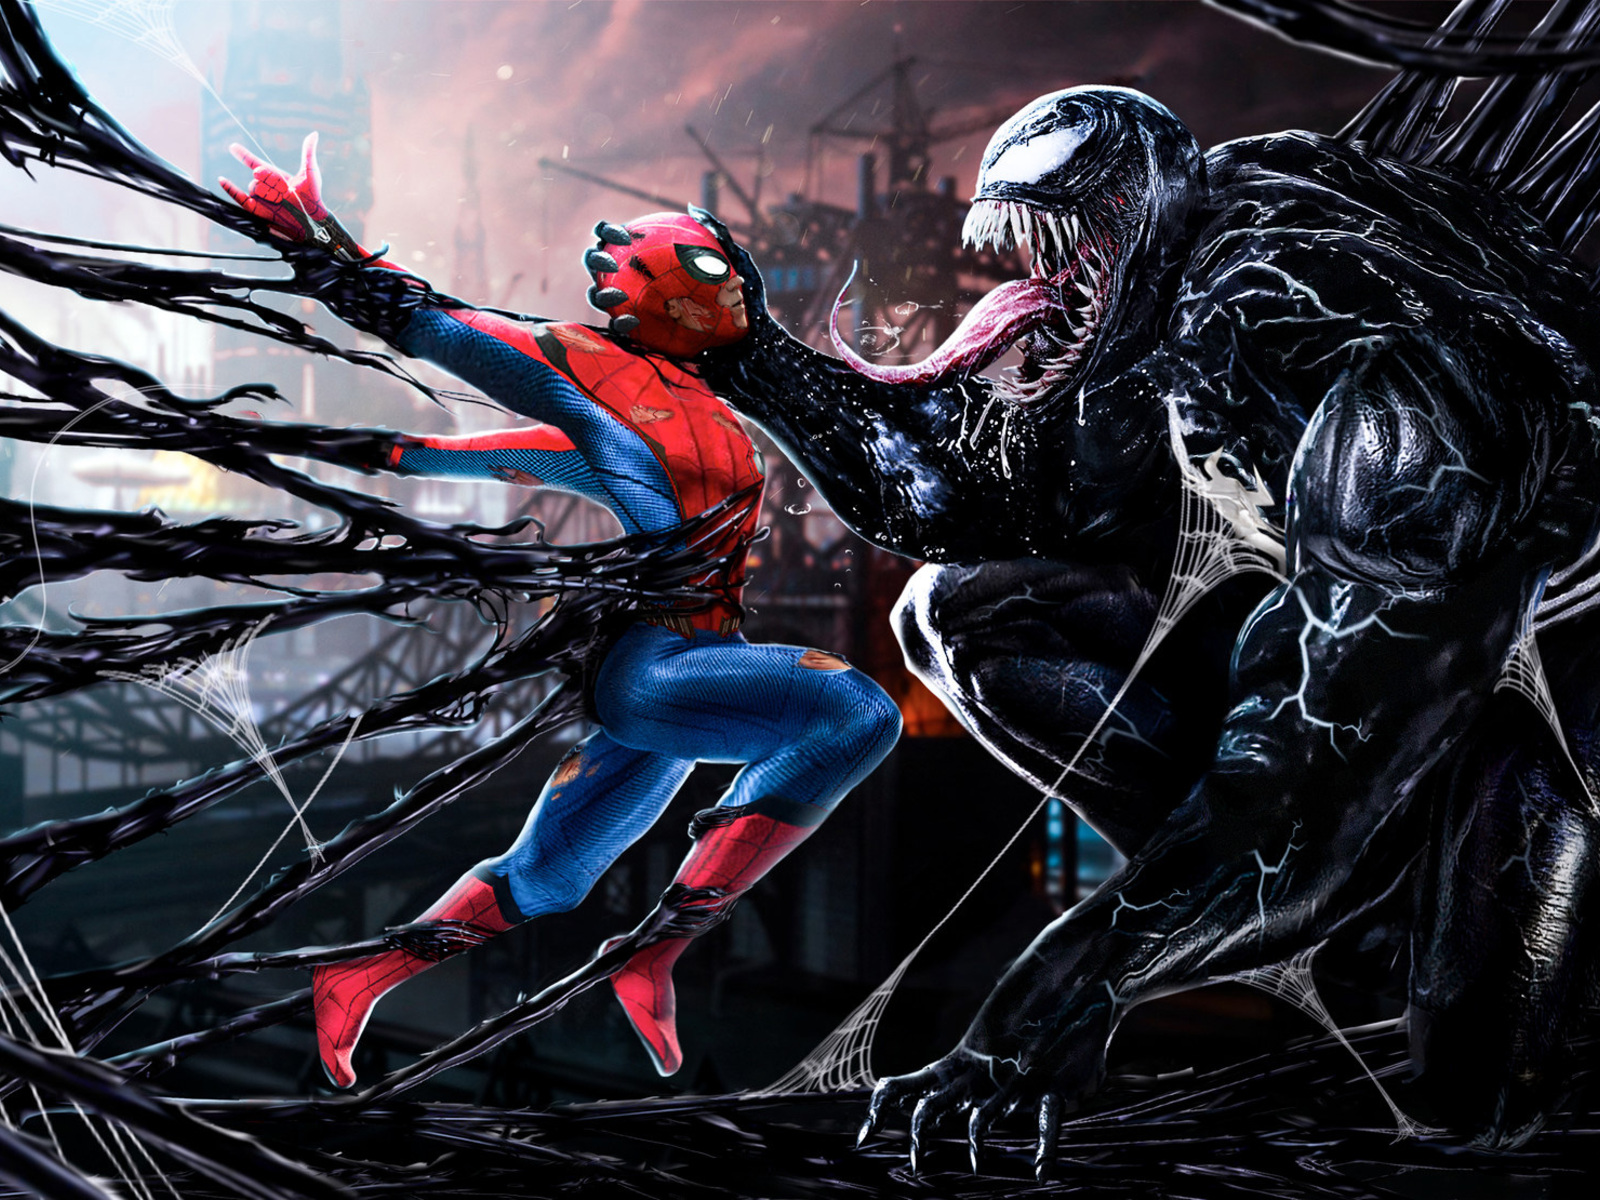 Spiderman Vs Venom Digital Art In 1600x1200 Resolution. 